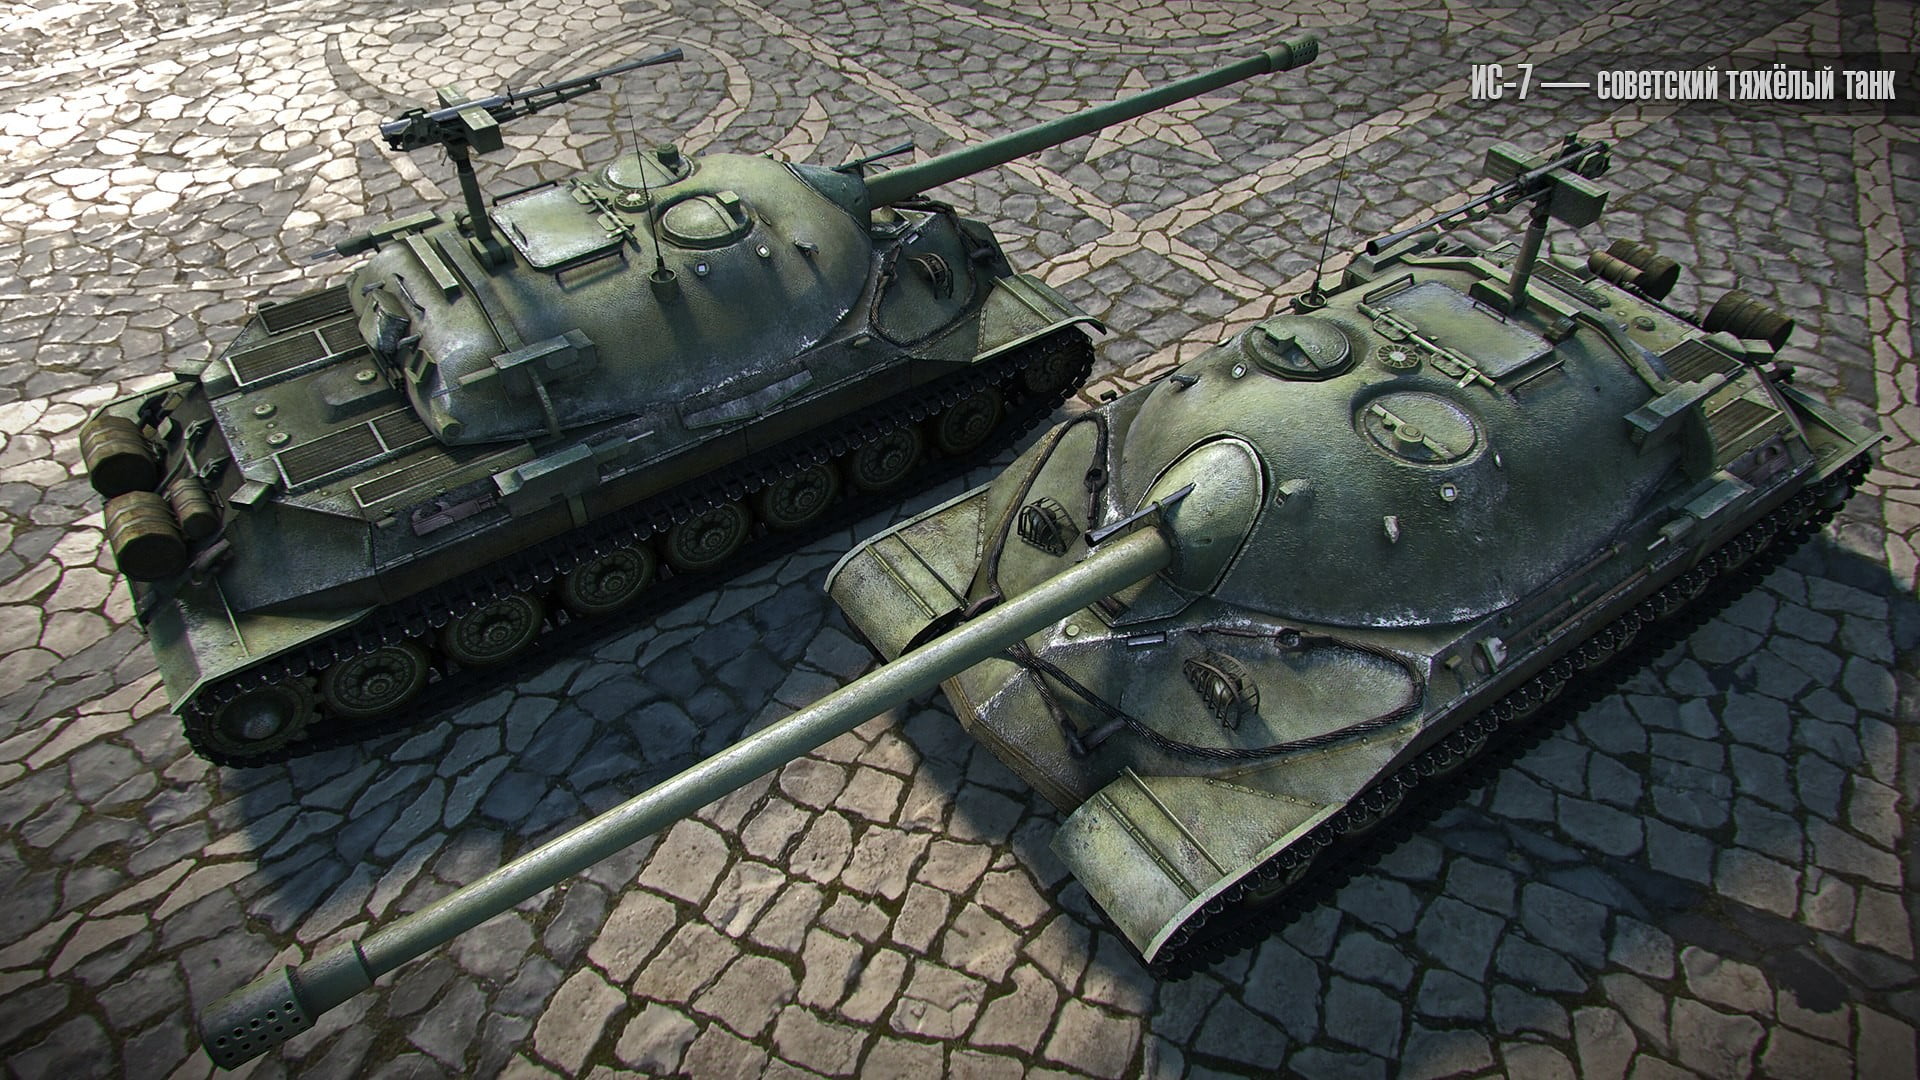 two green tanks, World of Tanks, tank, wargaming, video games